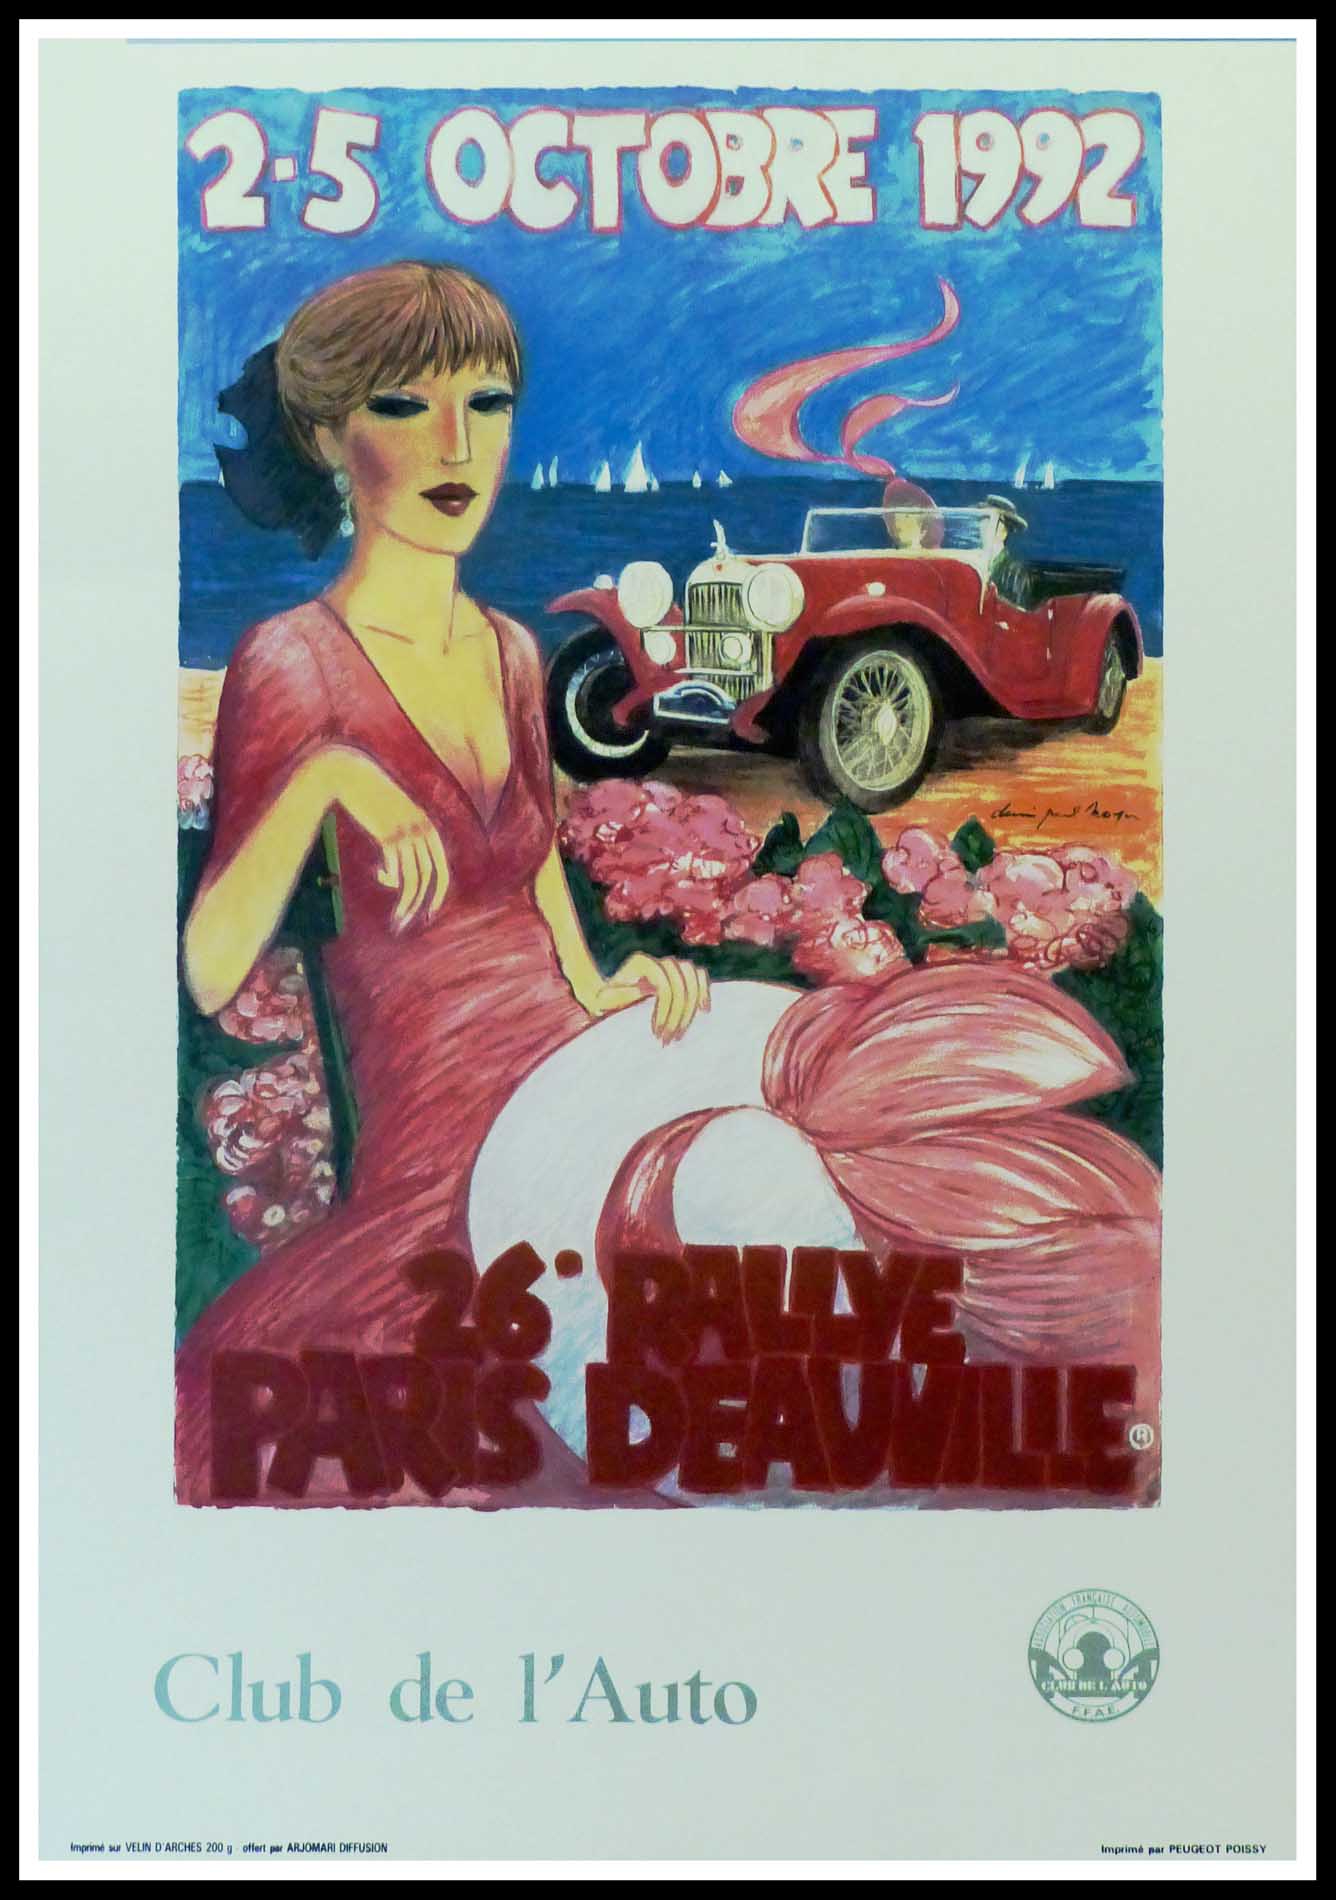 (alt="Affiche originale 26ème Paris-Deauville 1992 Club de l'Auto signée dans la planche par D.P.Noyer et imprimée sur du papier Velin d'Arches par Peugeot,Poissy")